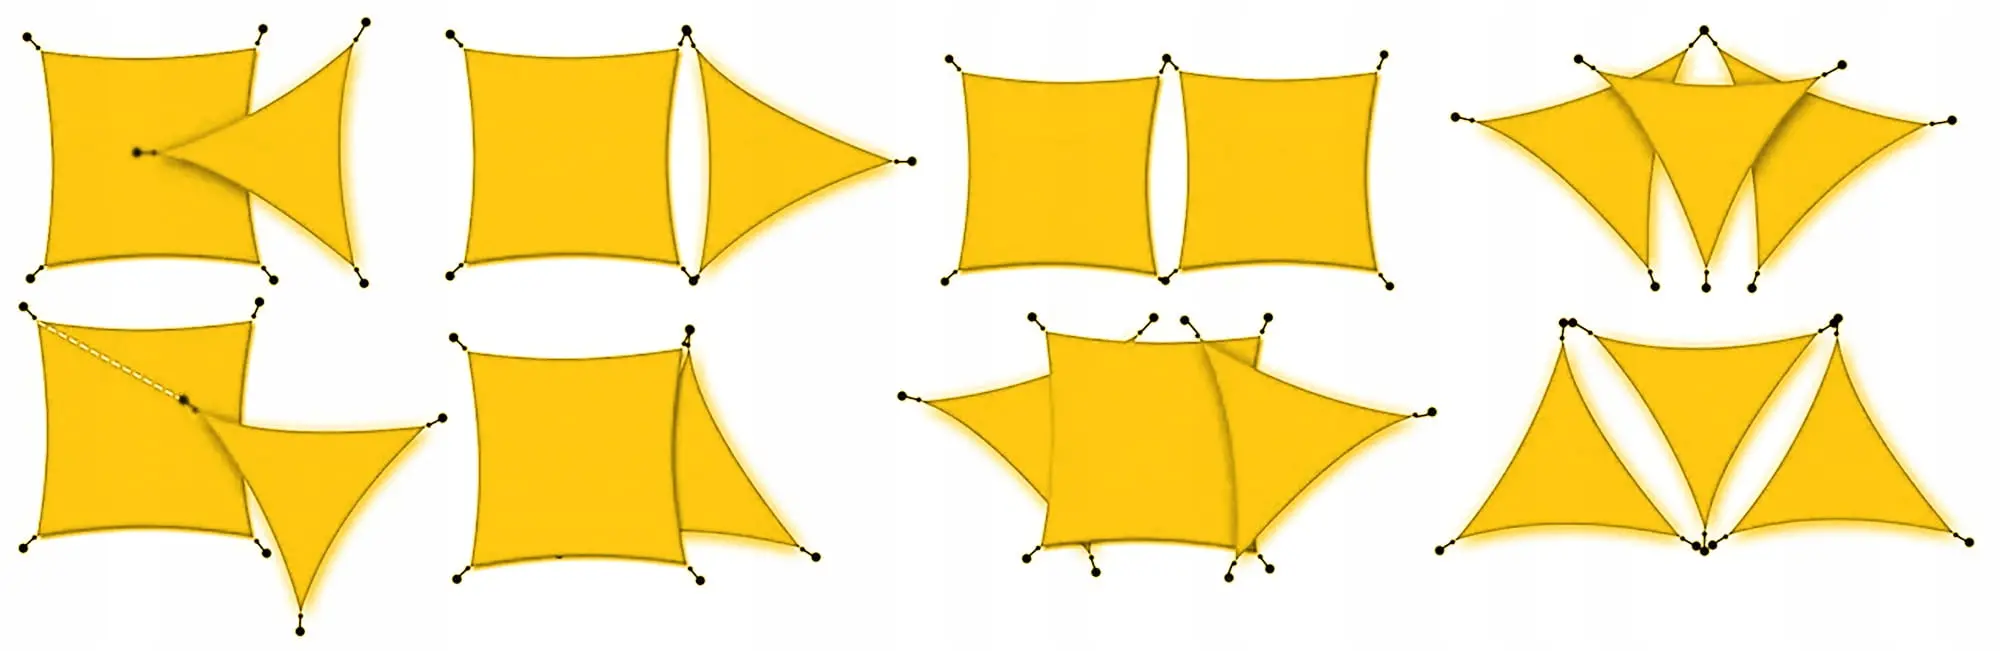 Треугольный тент JUMI (желтый) 3,6 х 3,6 х 3,6 м